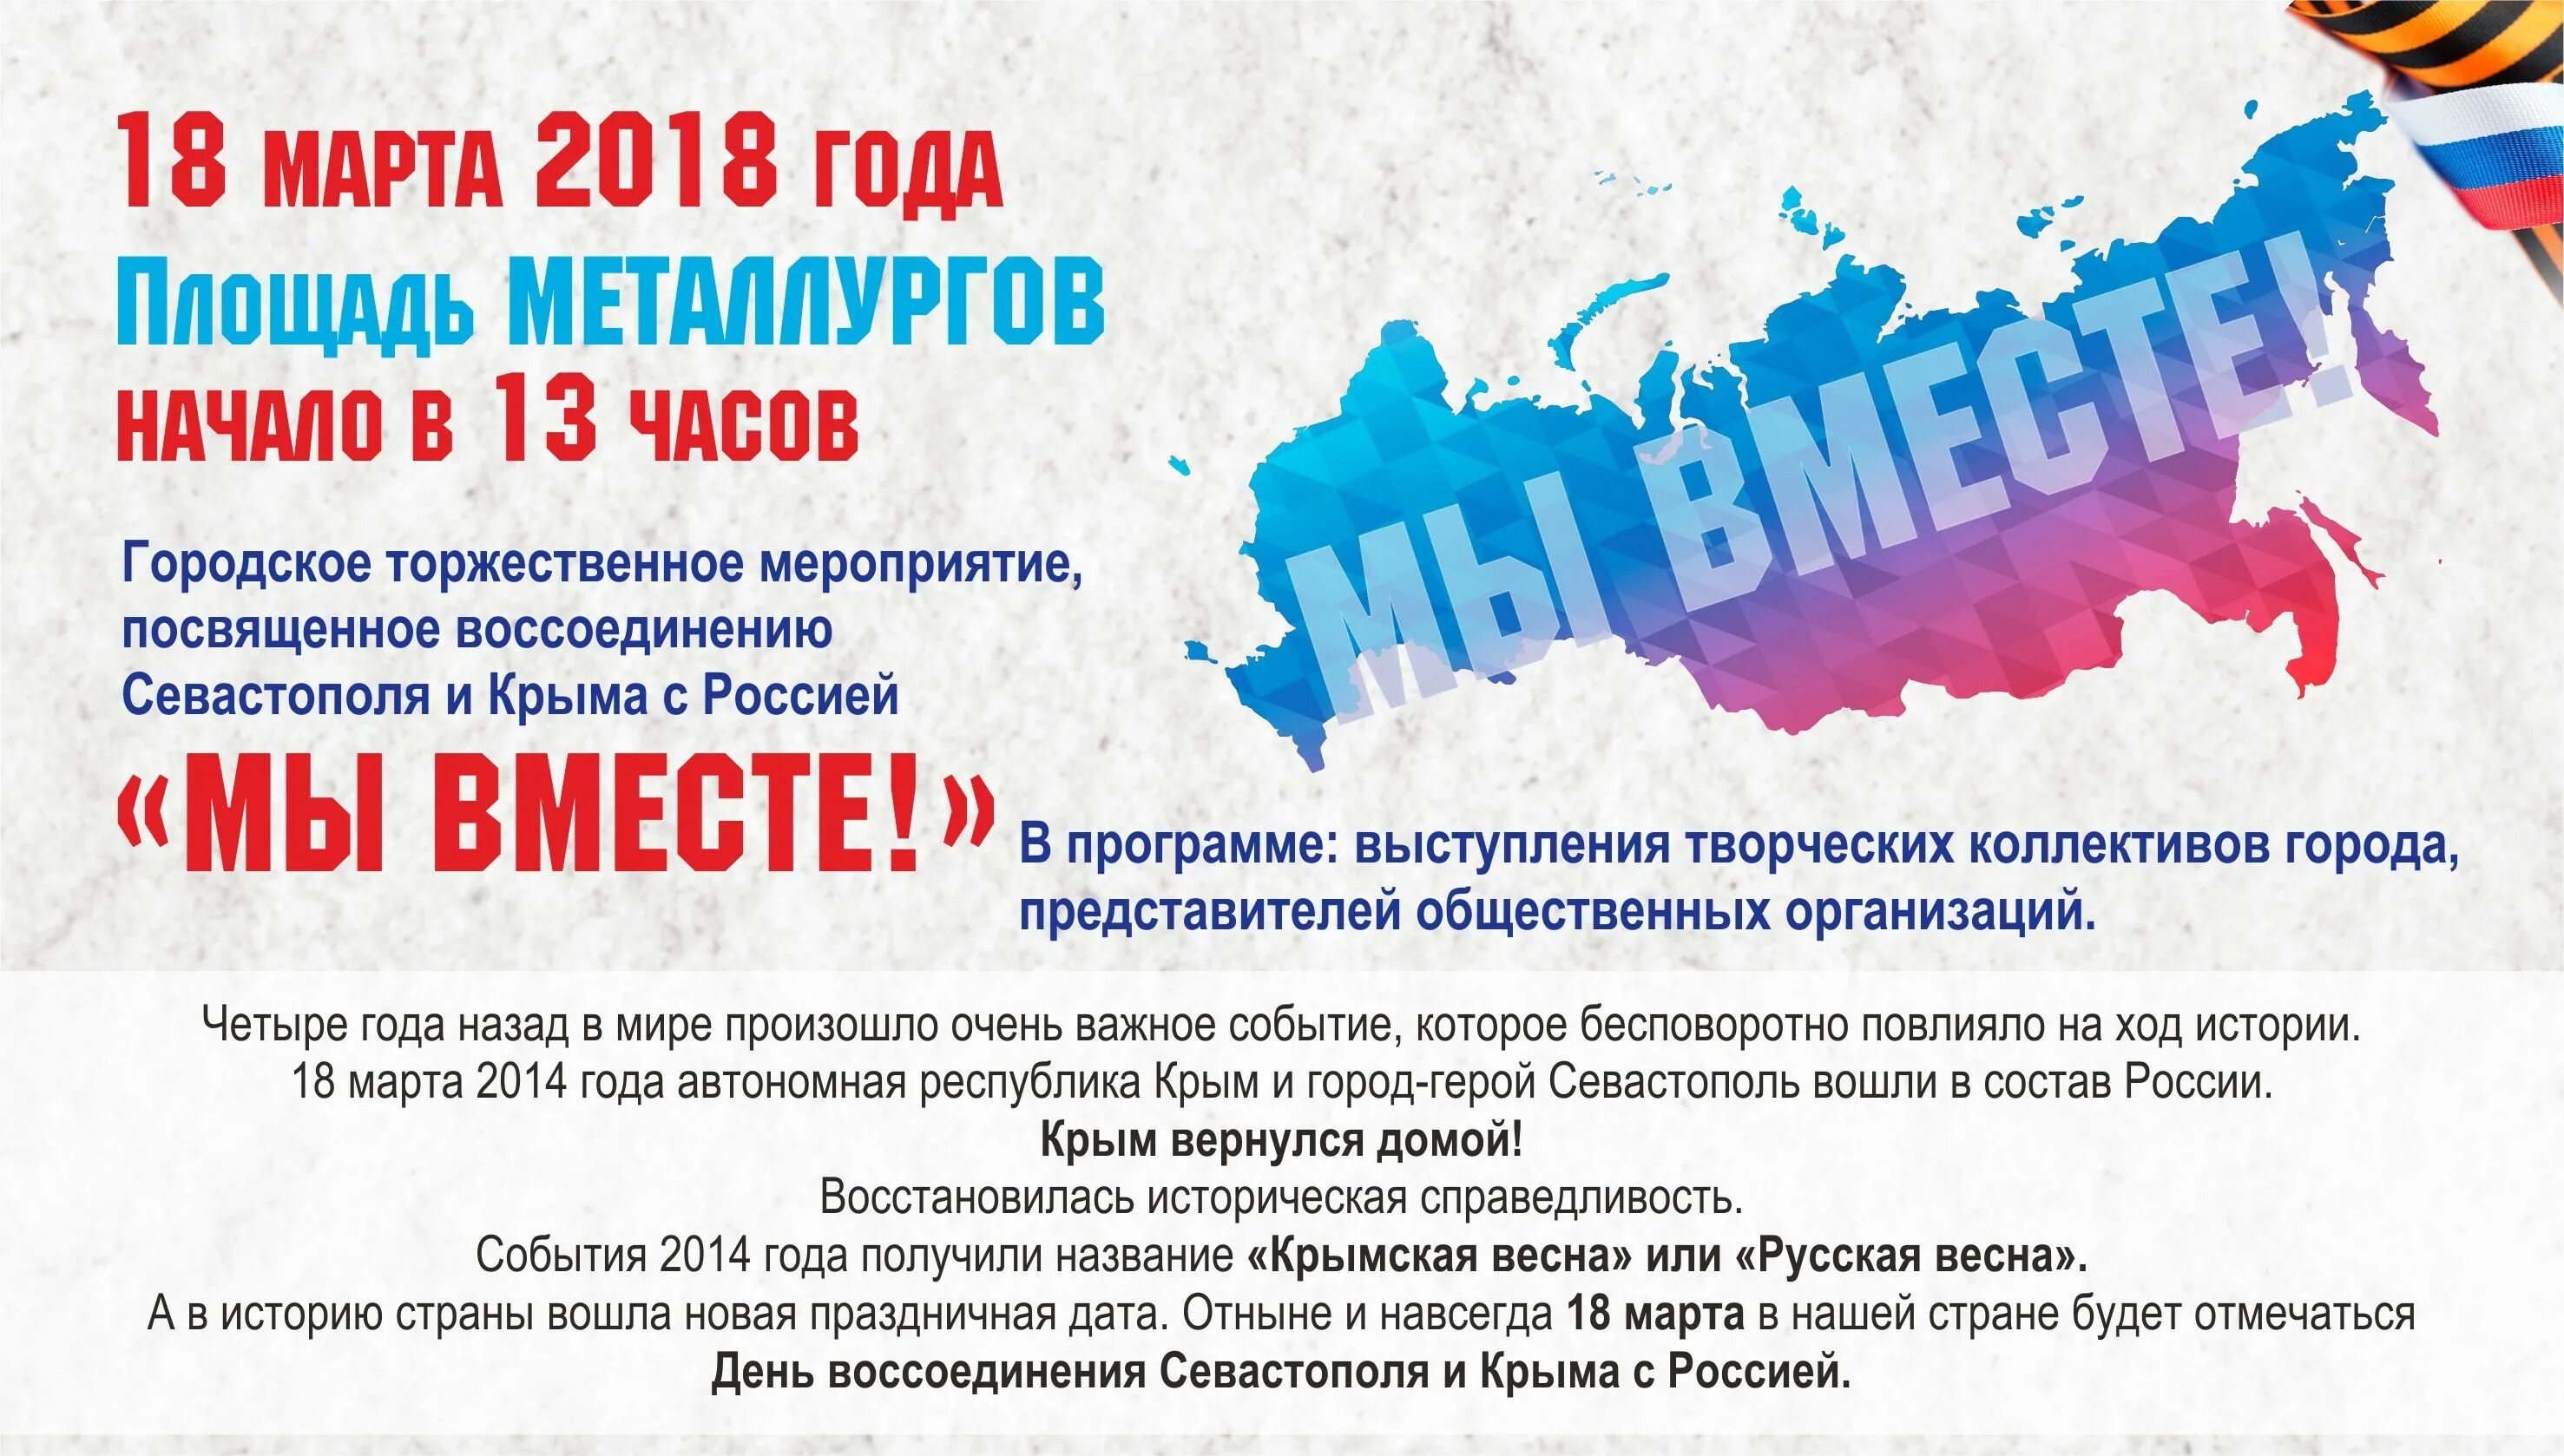 Акция ко дню воссоединения крыма с россией. Приглашаем посетить событие. Приглашаем посетить мероприятие. Название мероприятия про Крым.